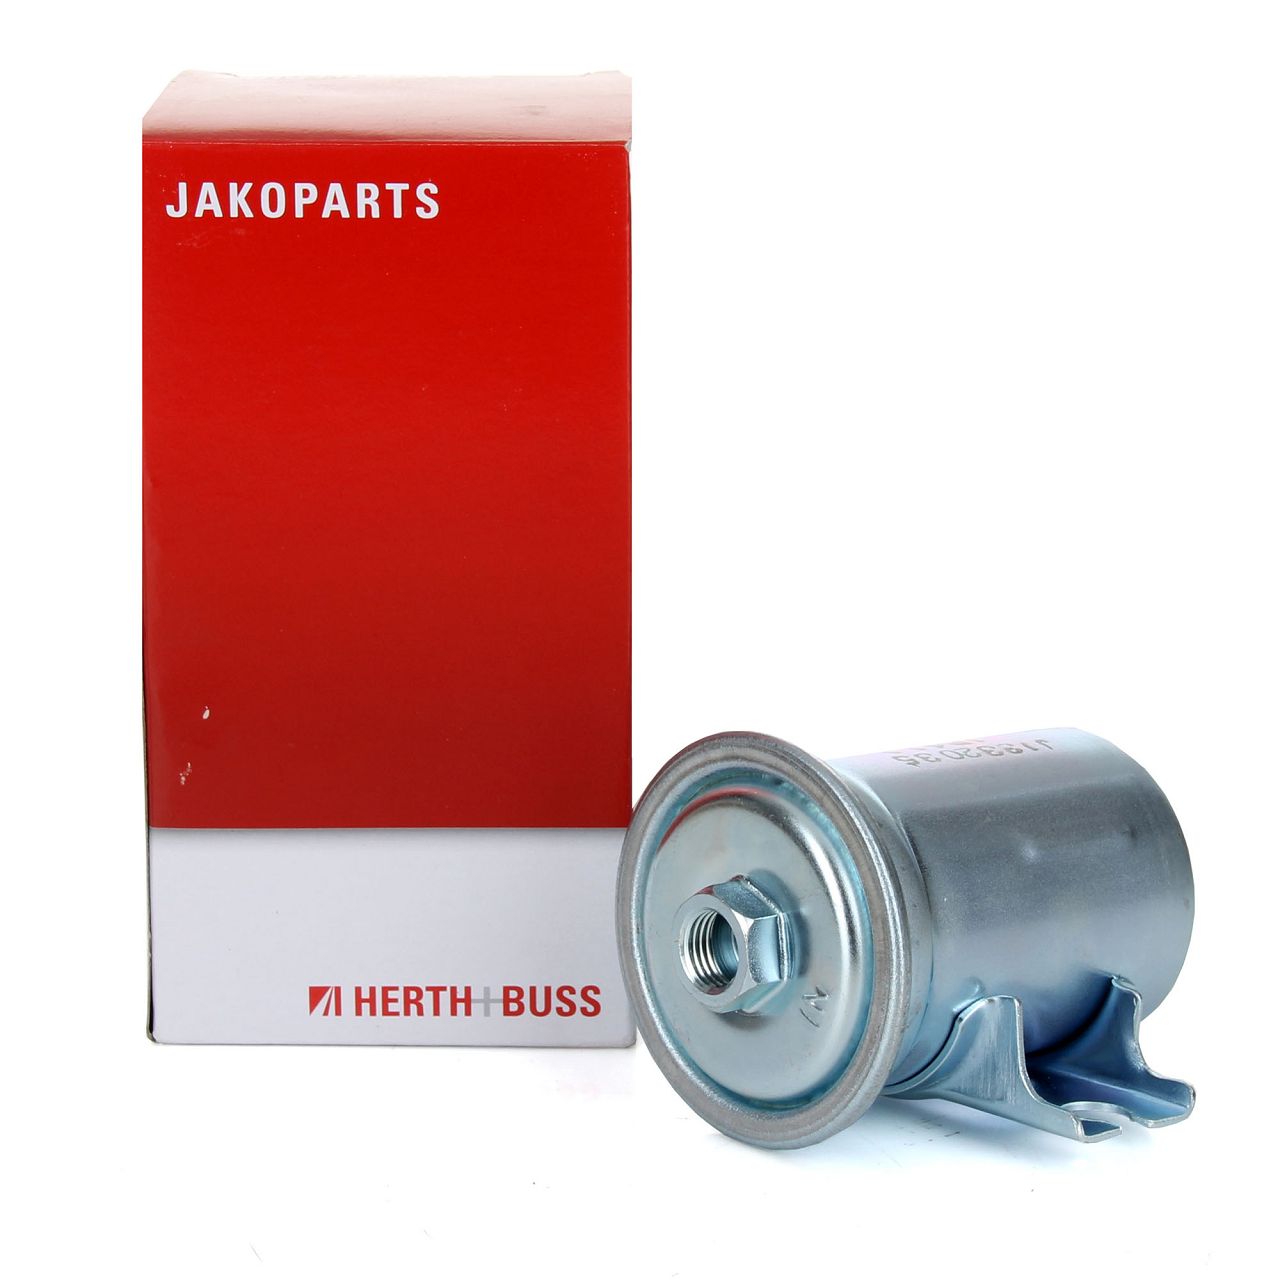 HERTH+BUSS JAKOPARTS Kraftstofffilter Benzinfilter für Toyota Corolla (E10 E11)